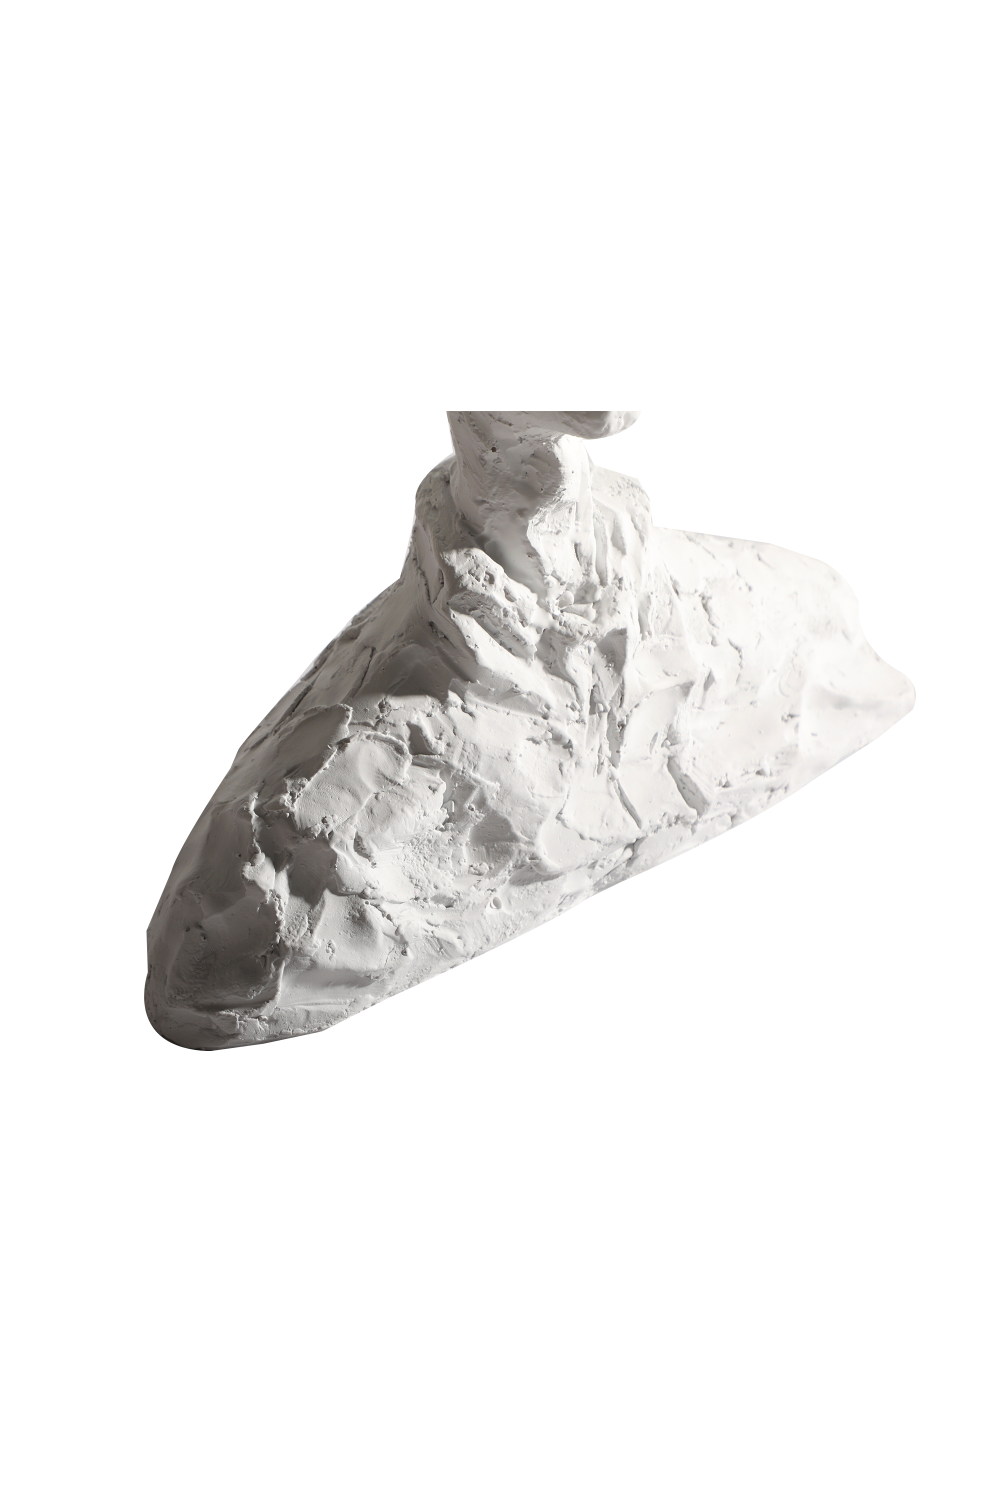 White Cement Man Head Sculpture | Liang & Eimil Barton | OROA.com